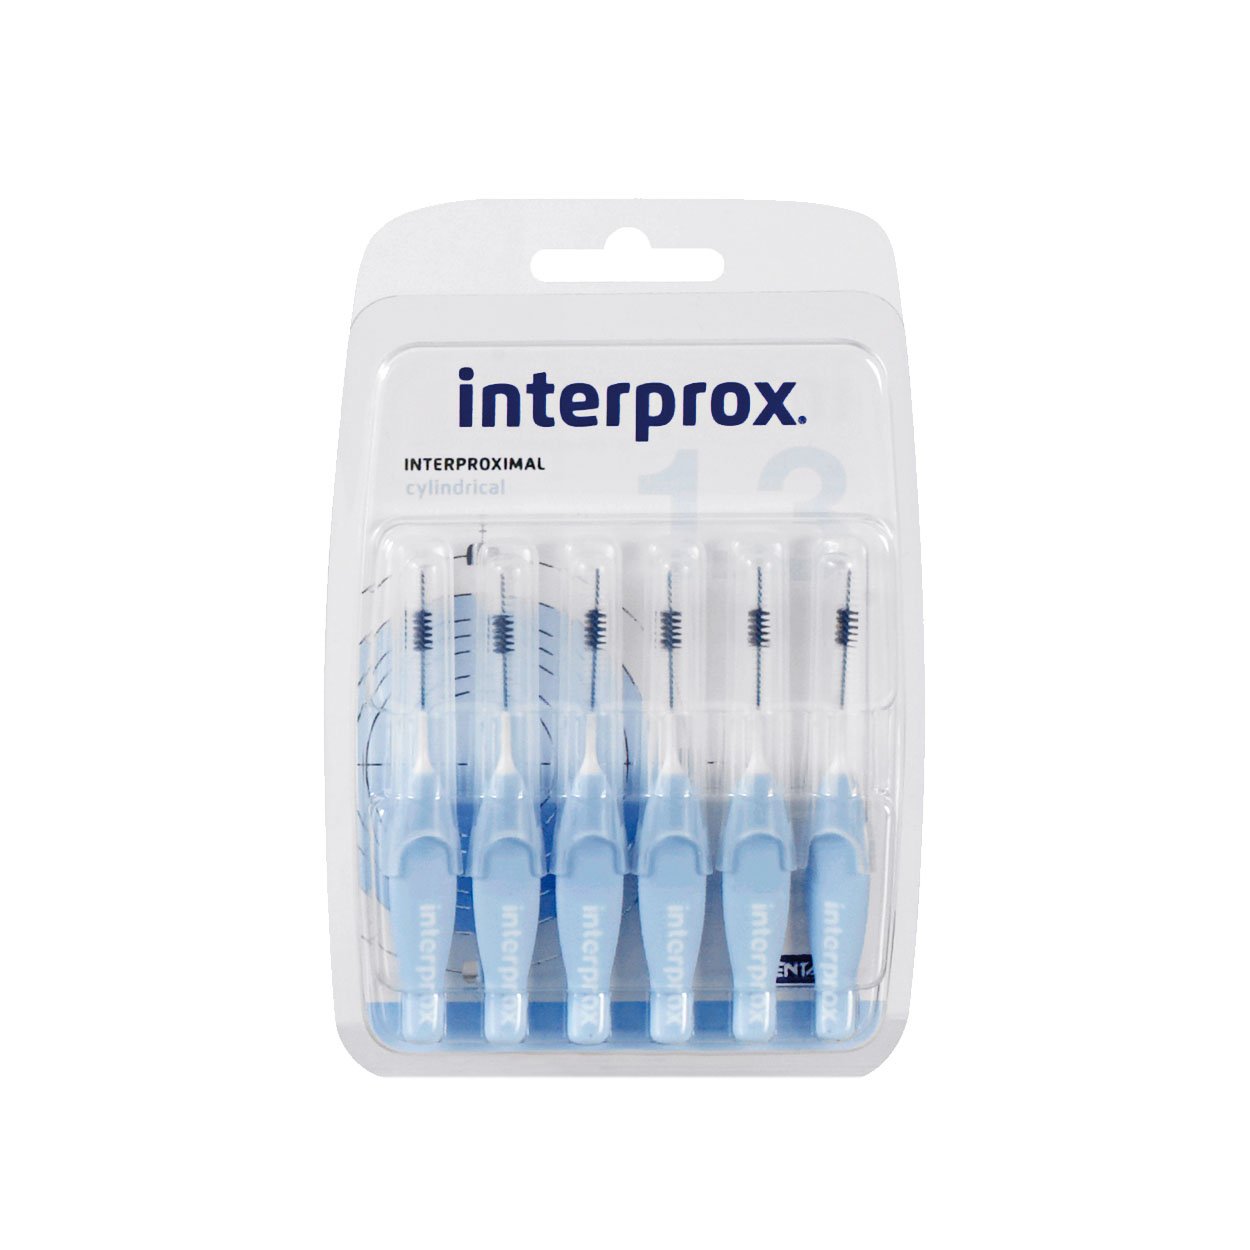 Interprox Interdentalbürsten hellblau zylindrisch 6 Stück, 6er Pack (6x 6 Stück)